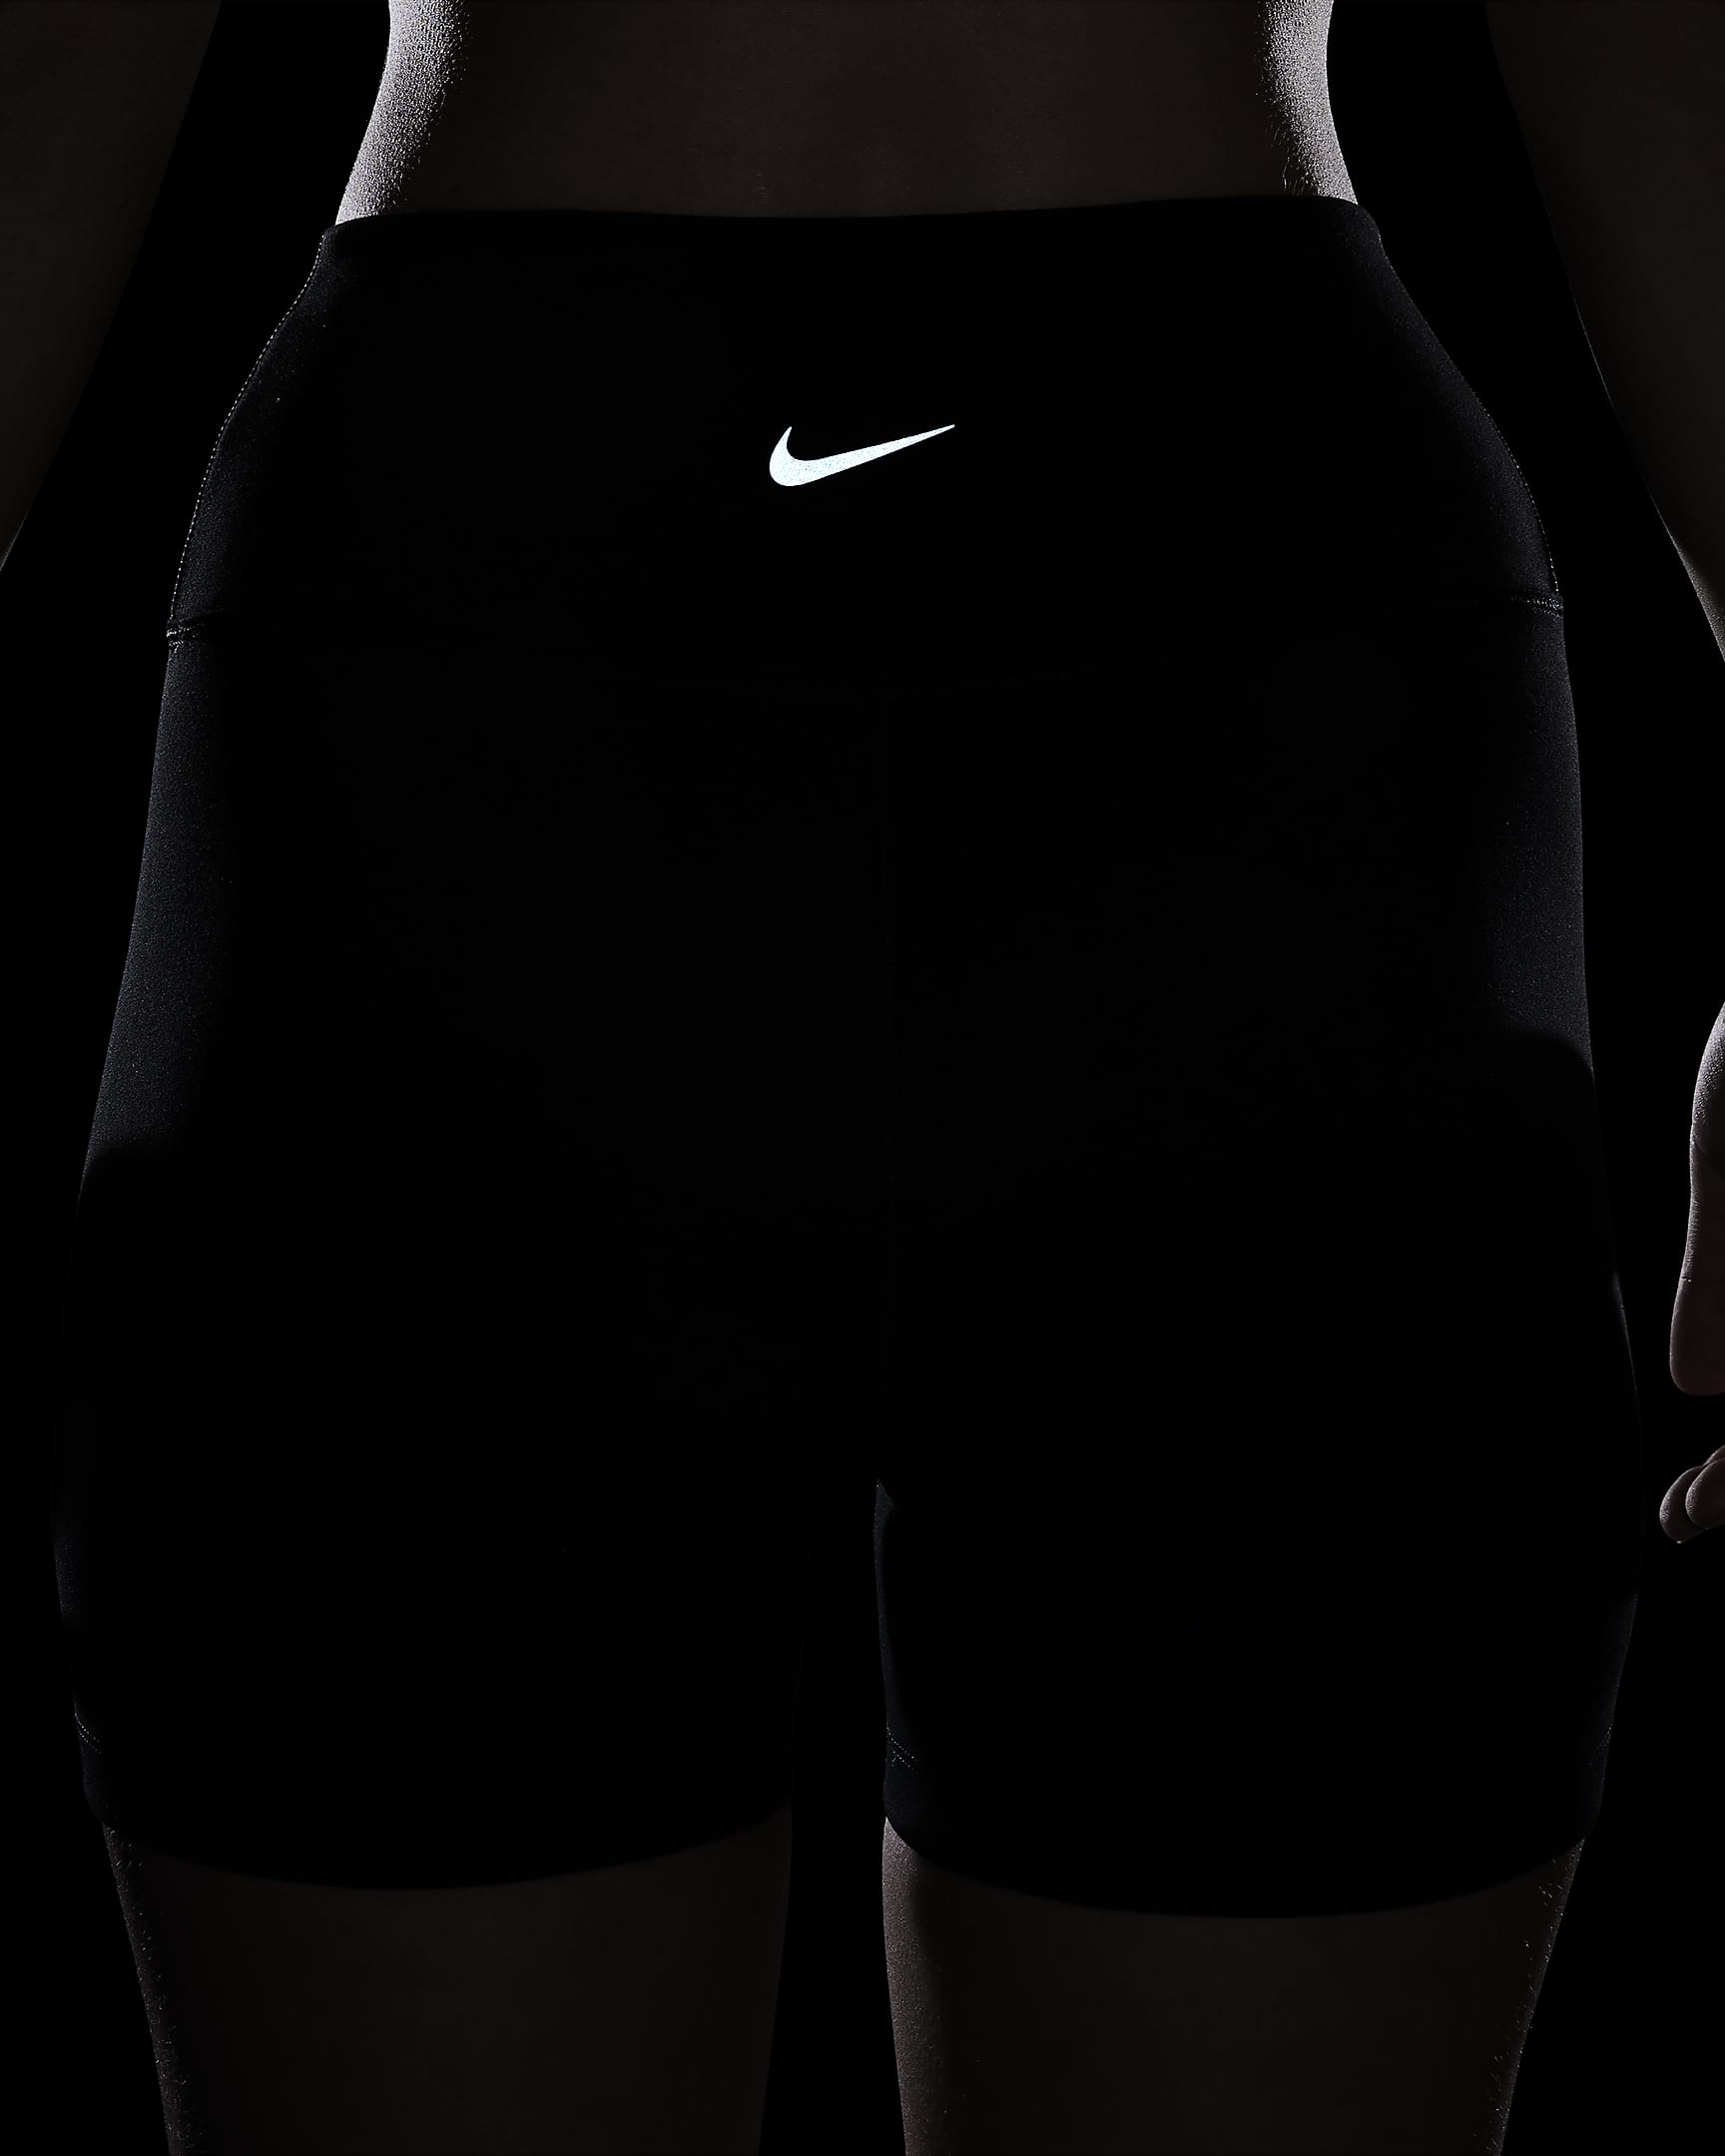 Cycliste taille haute 13 cm Nike One pour femme - Noir/Noir